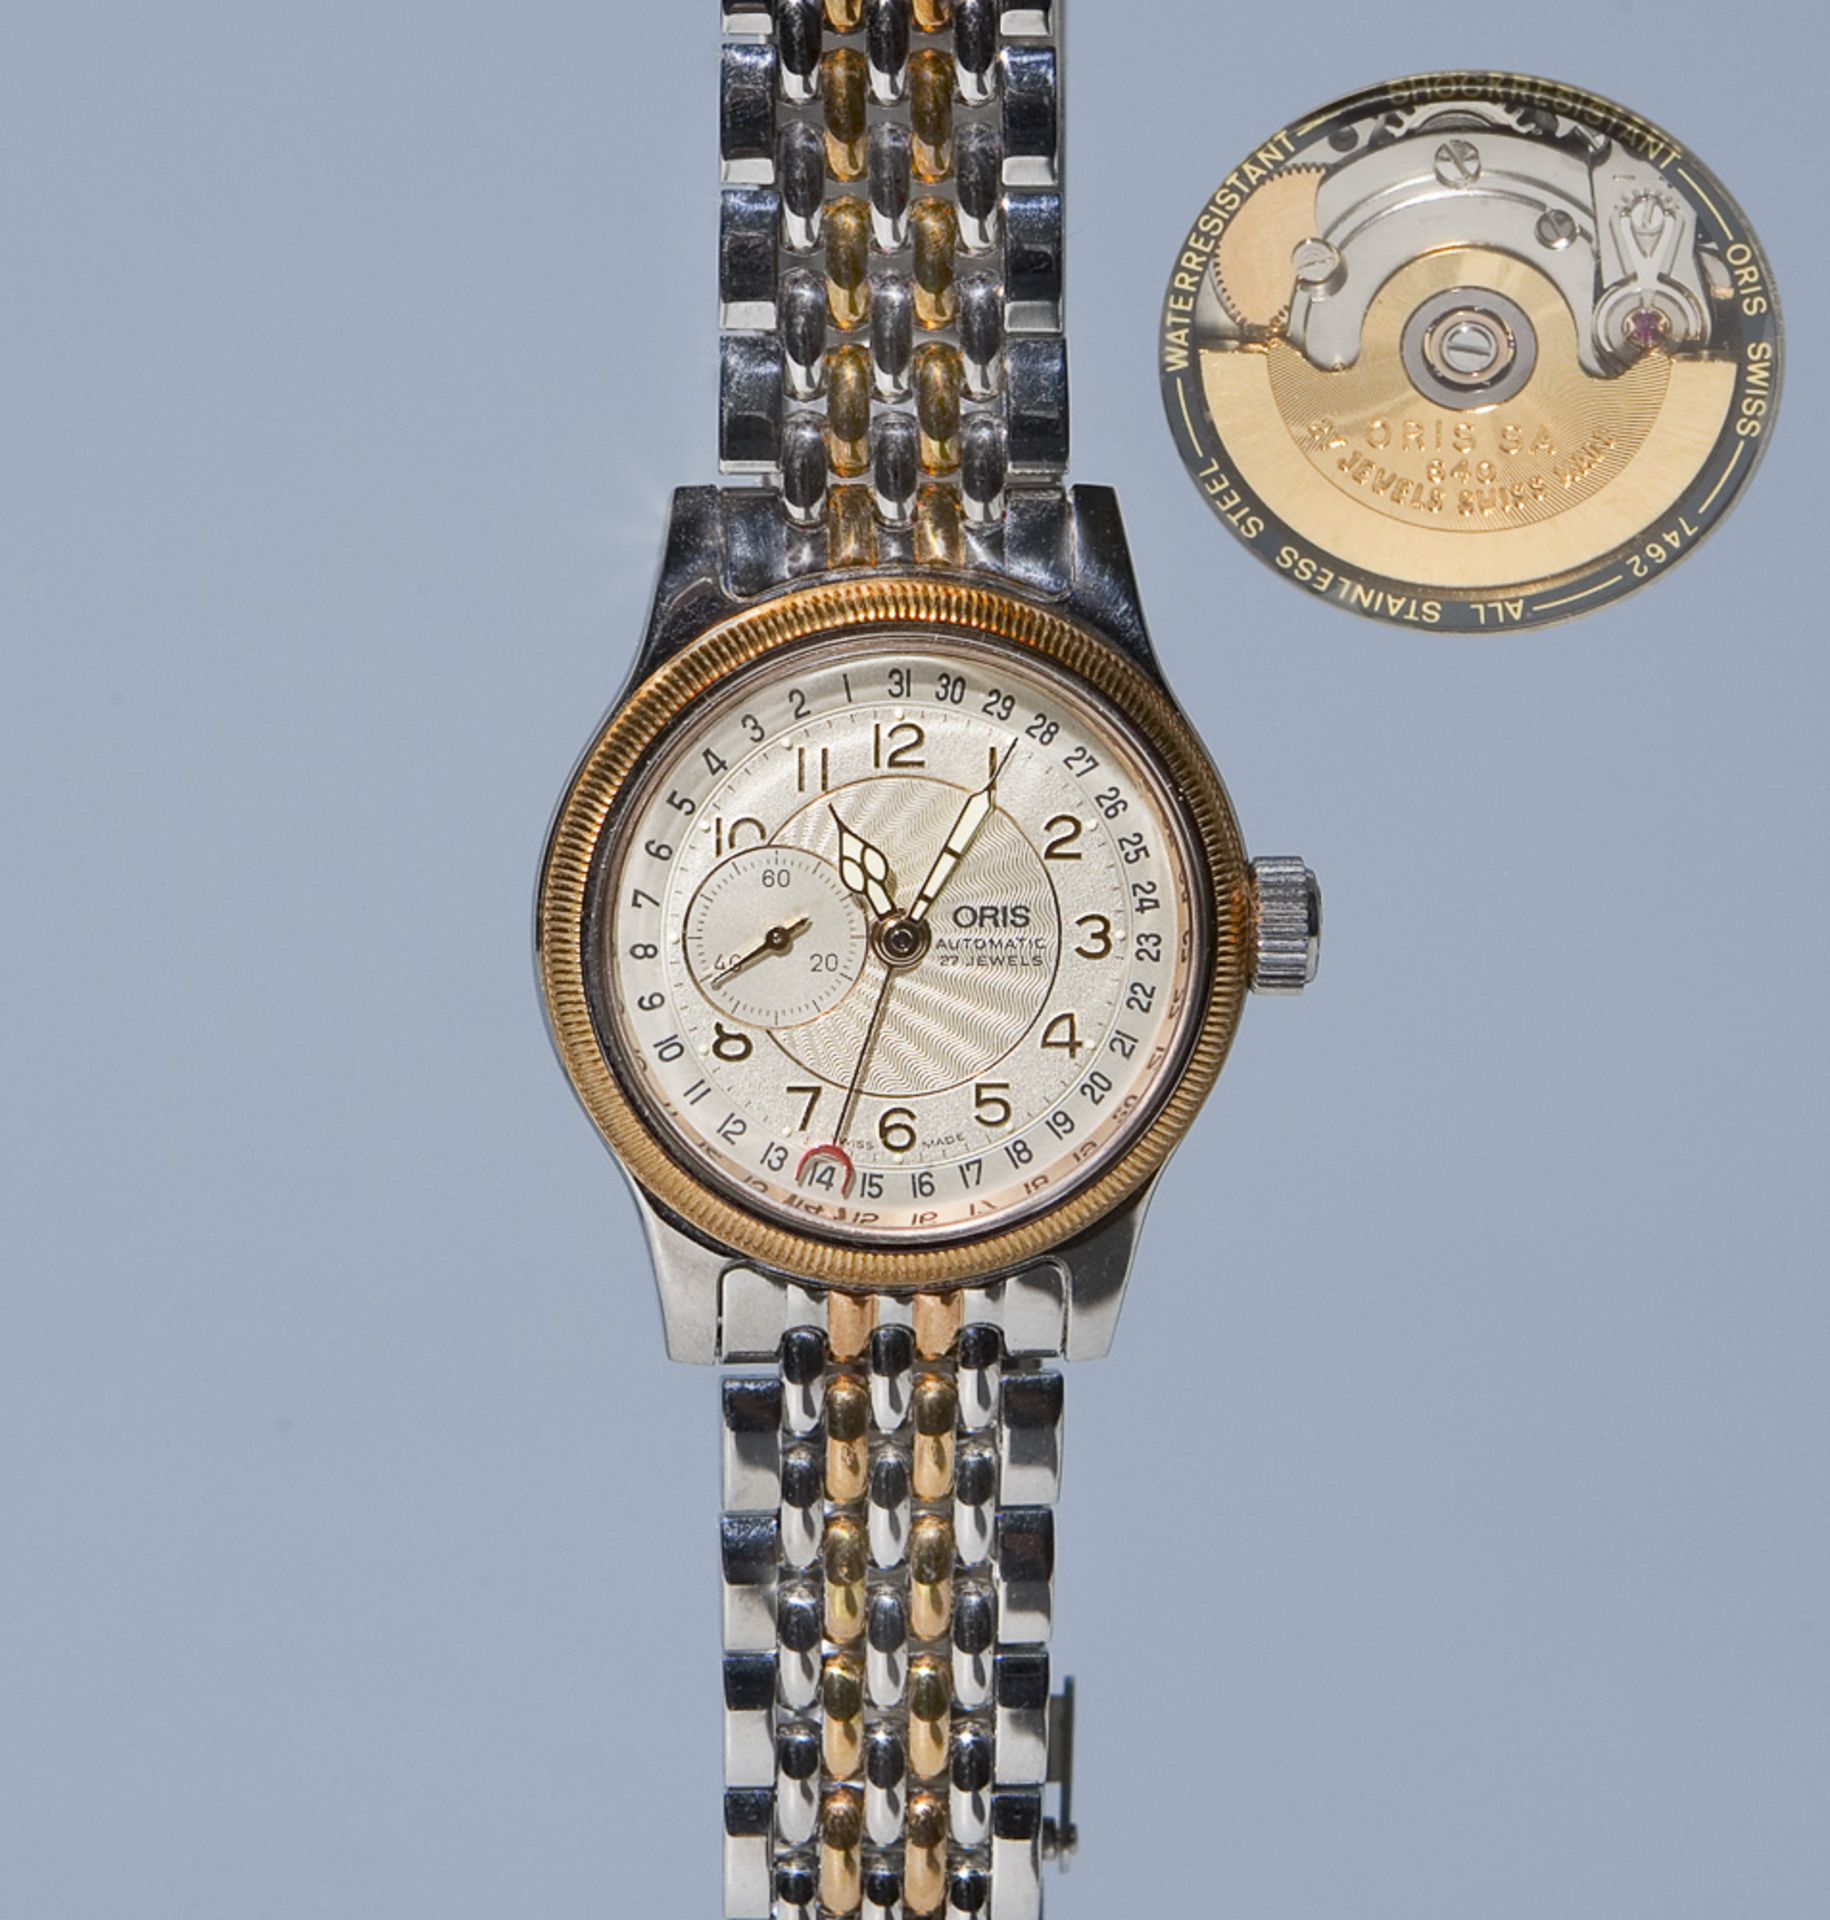 Oris-Automatik-Armbanduhr.Edelstahl, partiell goldfarben beschichtet, Zifferblatt, Werk,Armband